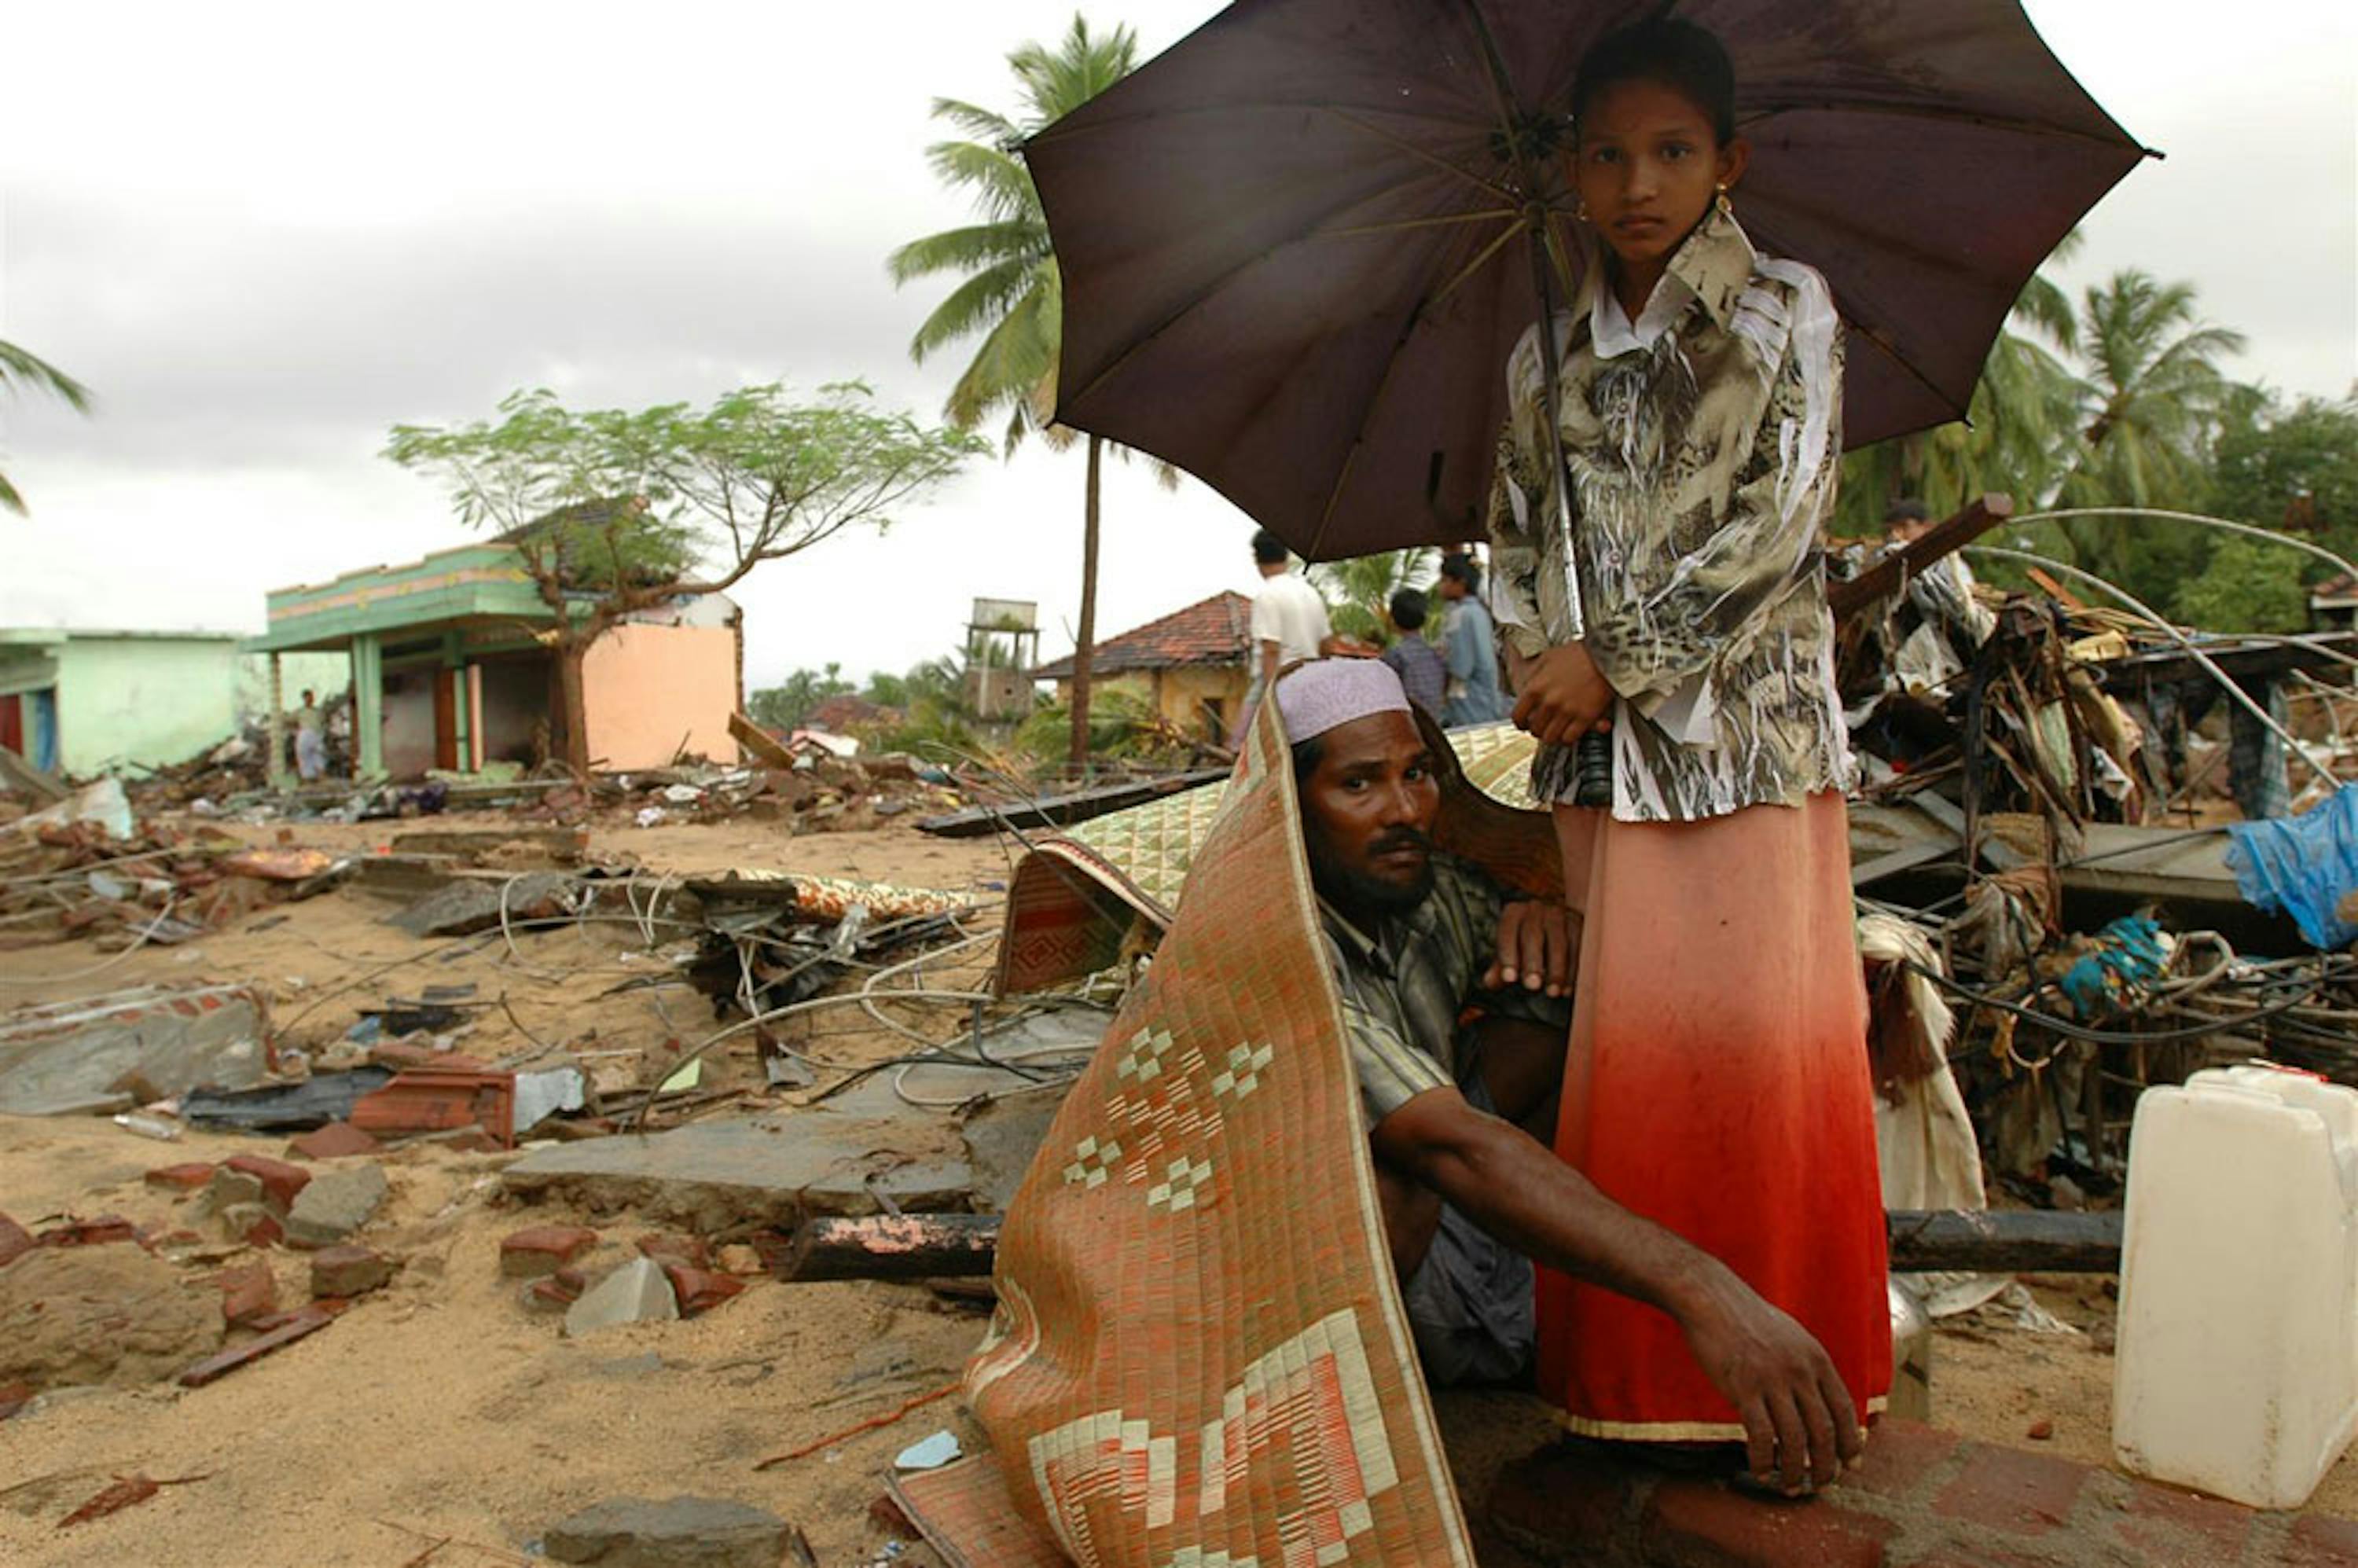 Un villaggio dello Sri Lanka raso al suolo all'indomani dello tsunami del 26 dicembre 2004 - ©UNICEF/NYHQ2004-0890/Noorani